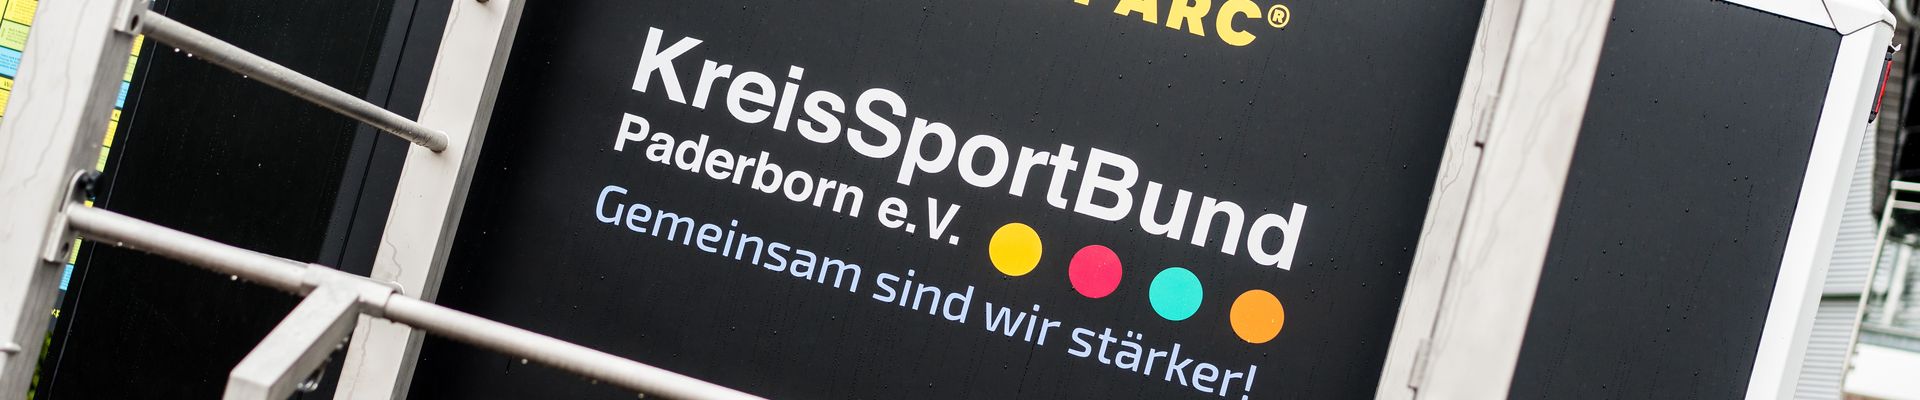 KreisSportBund Paderborn e.V.